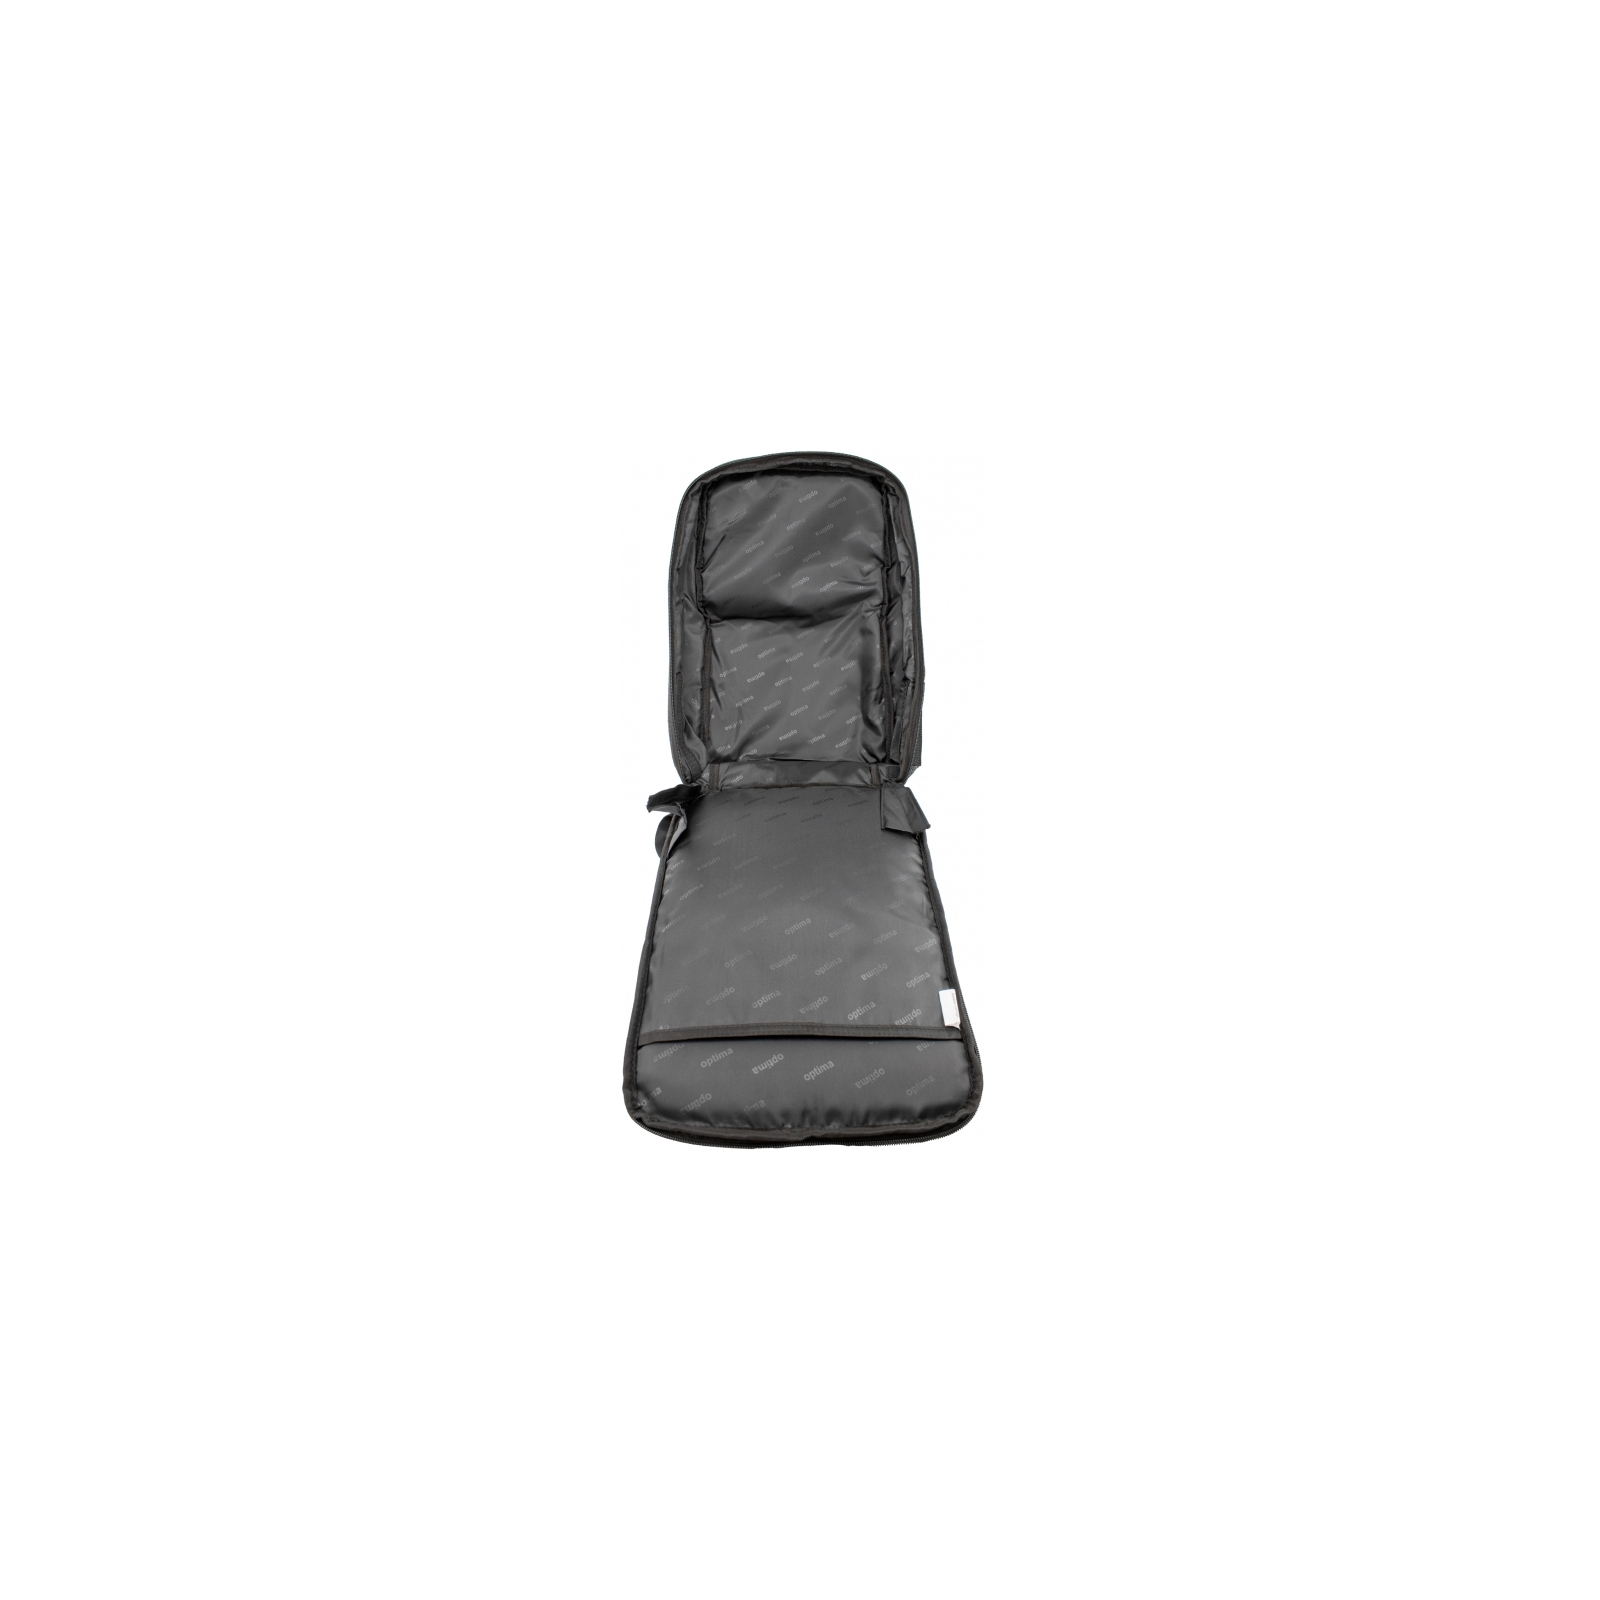 Рюкзак школьный Optima 18.5" Techno мужской 0.7 кг 6-15 л Светло-коричневый (O96915-02) изображение 3